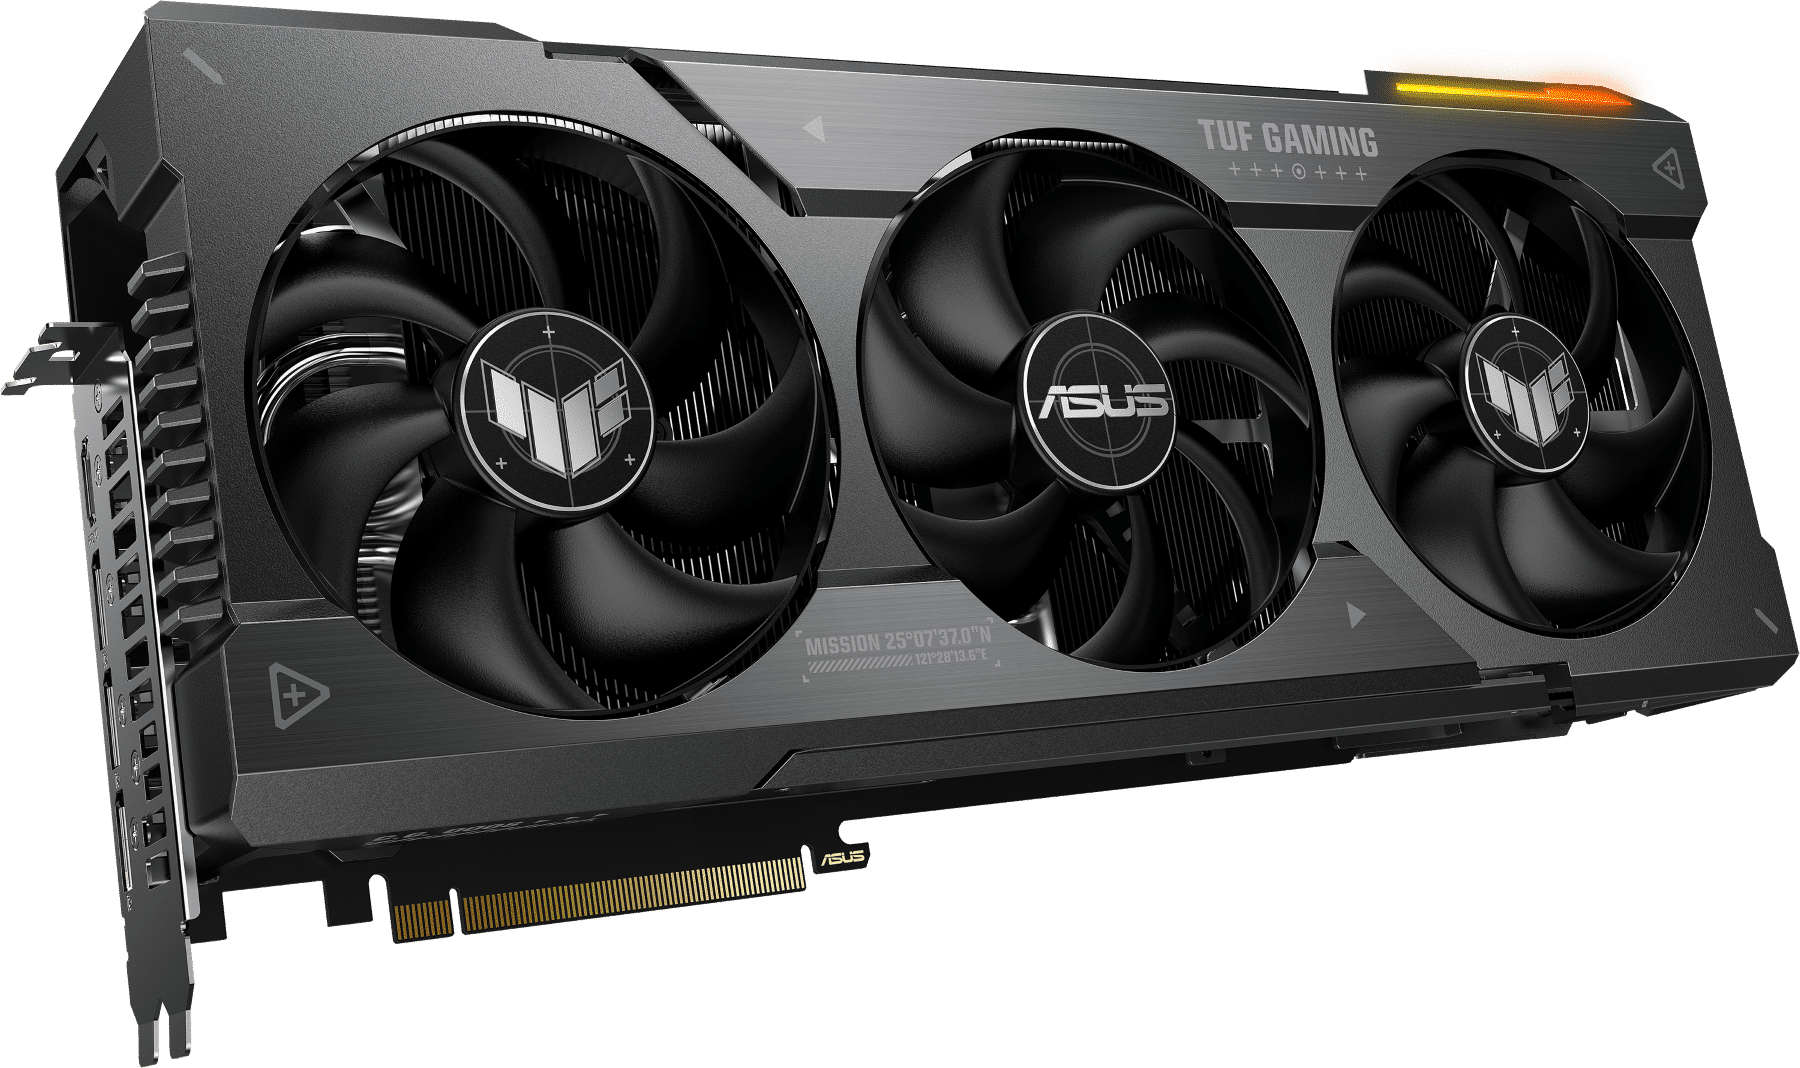 ASUS Announces TUF Gaming Radeon RX 7900 Series GPUs 21